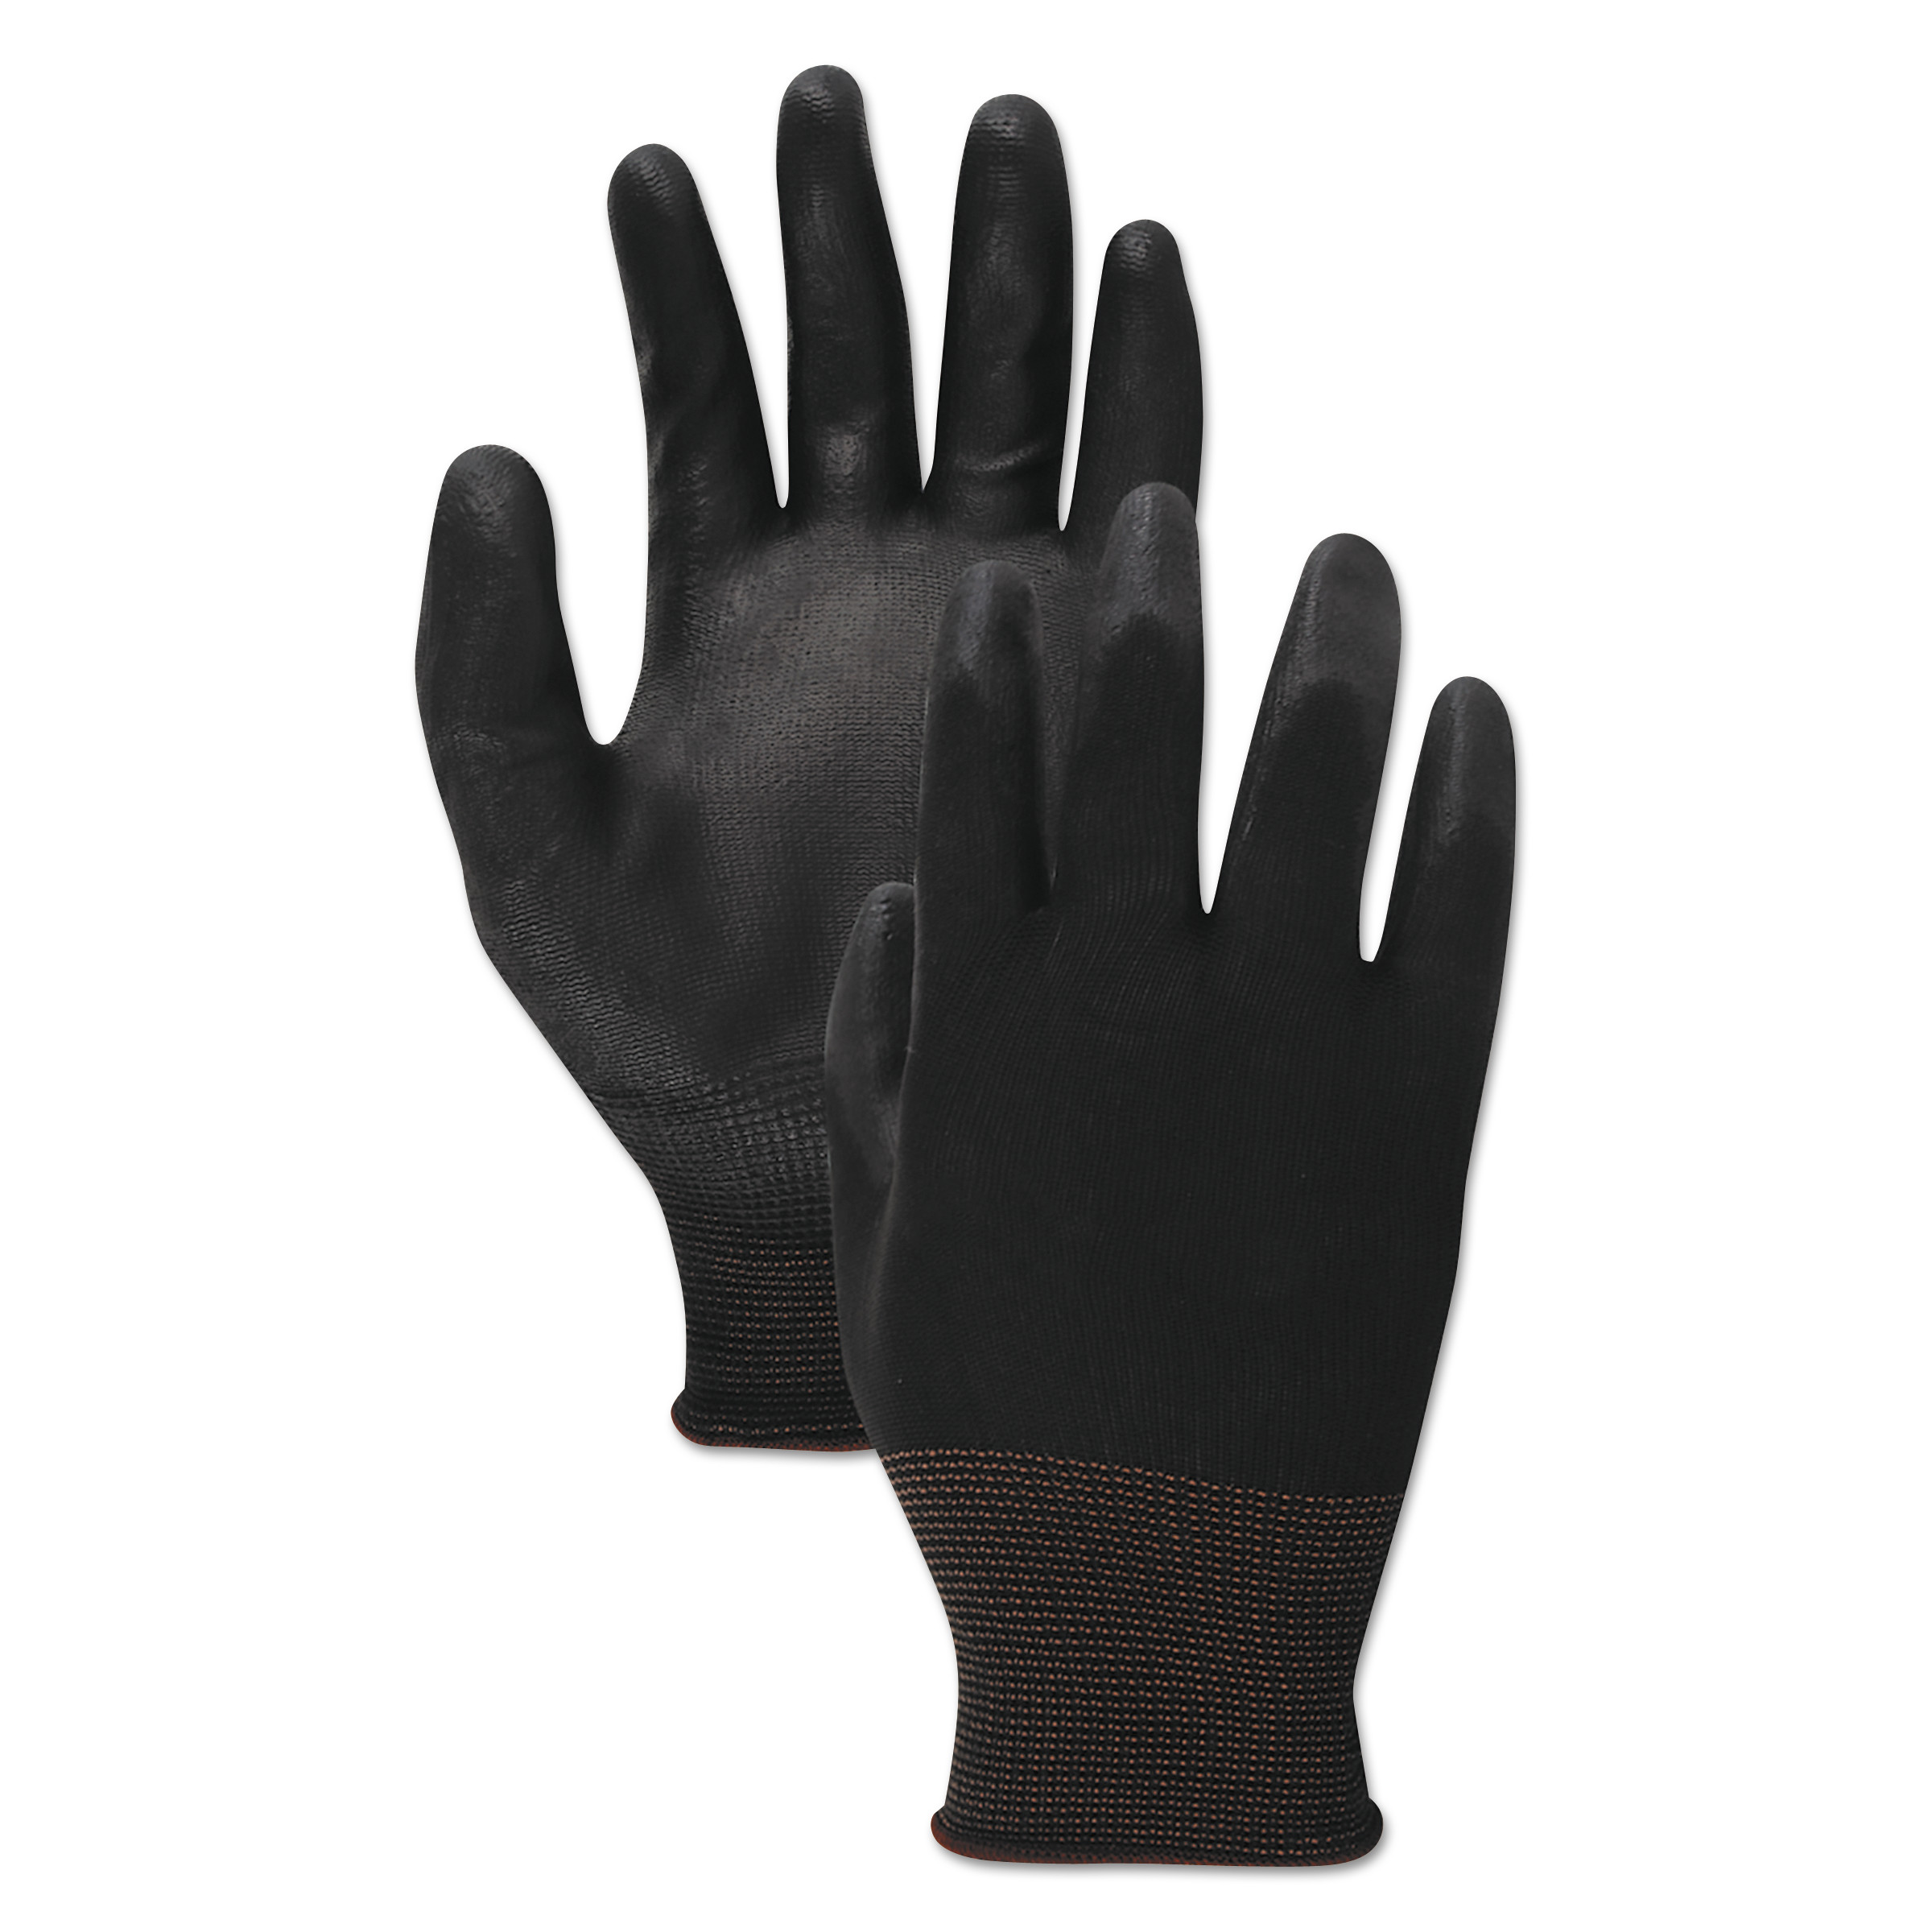 Palm Coated Cut-Resistant HPPE Glove, Salt & Pepper/Blk, Size 11(2-X-Large), DZ